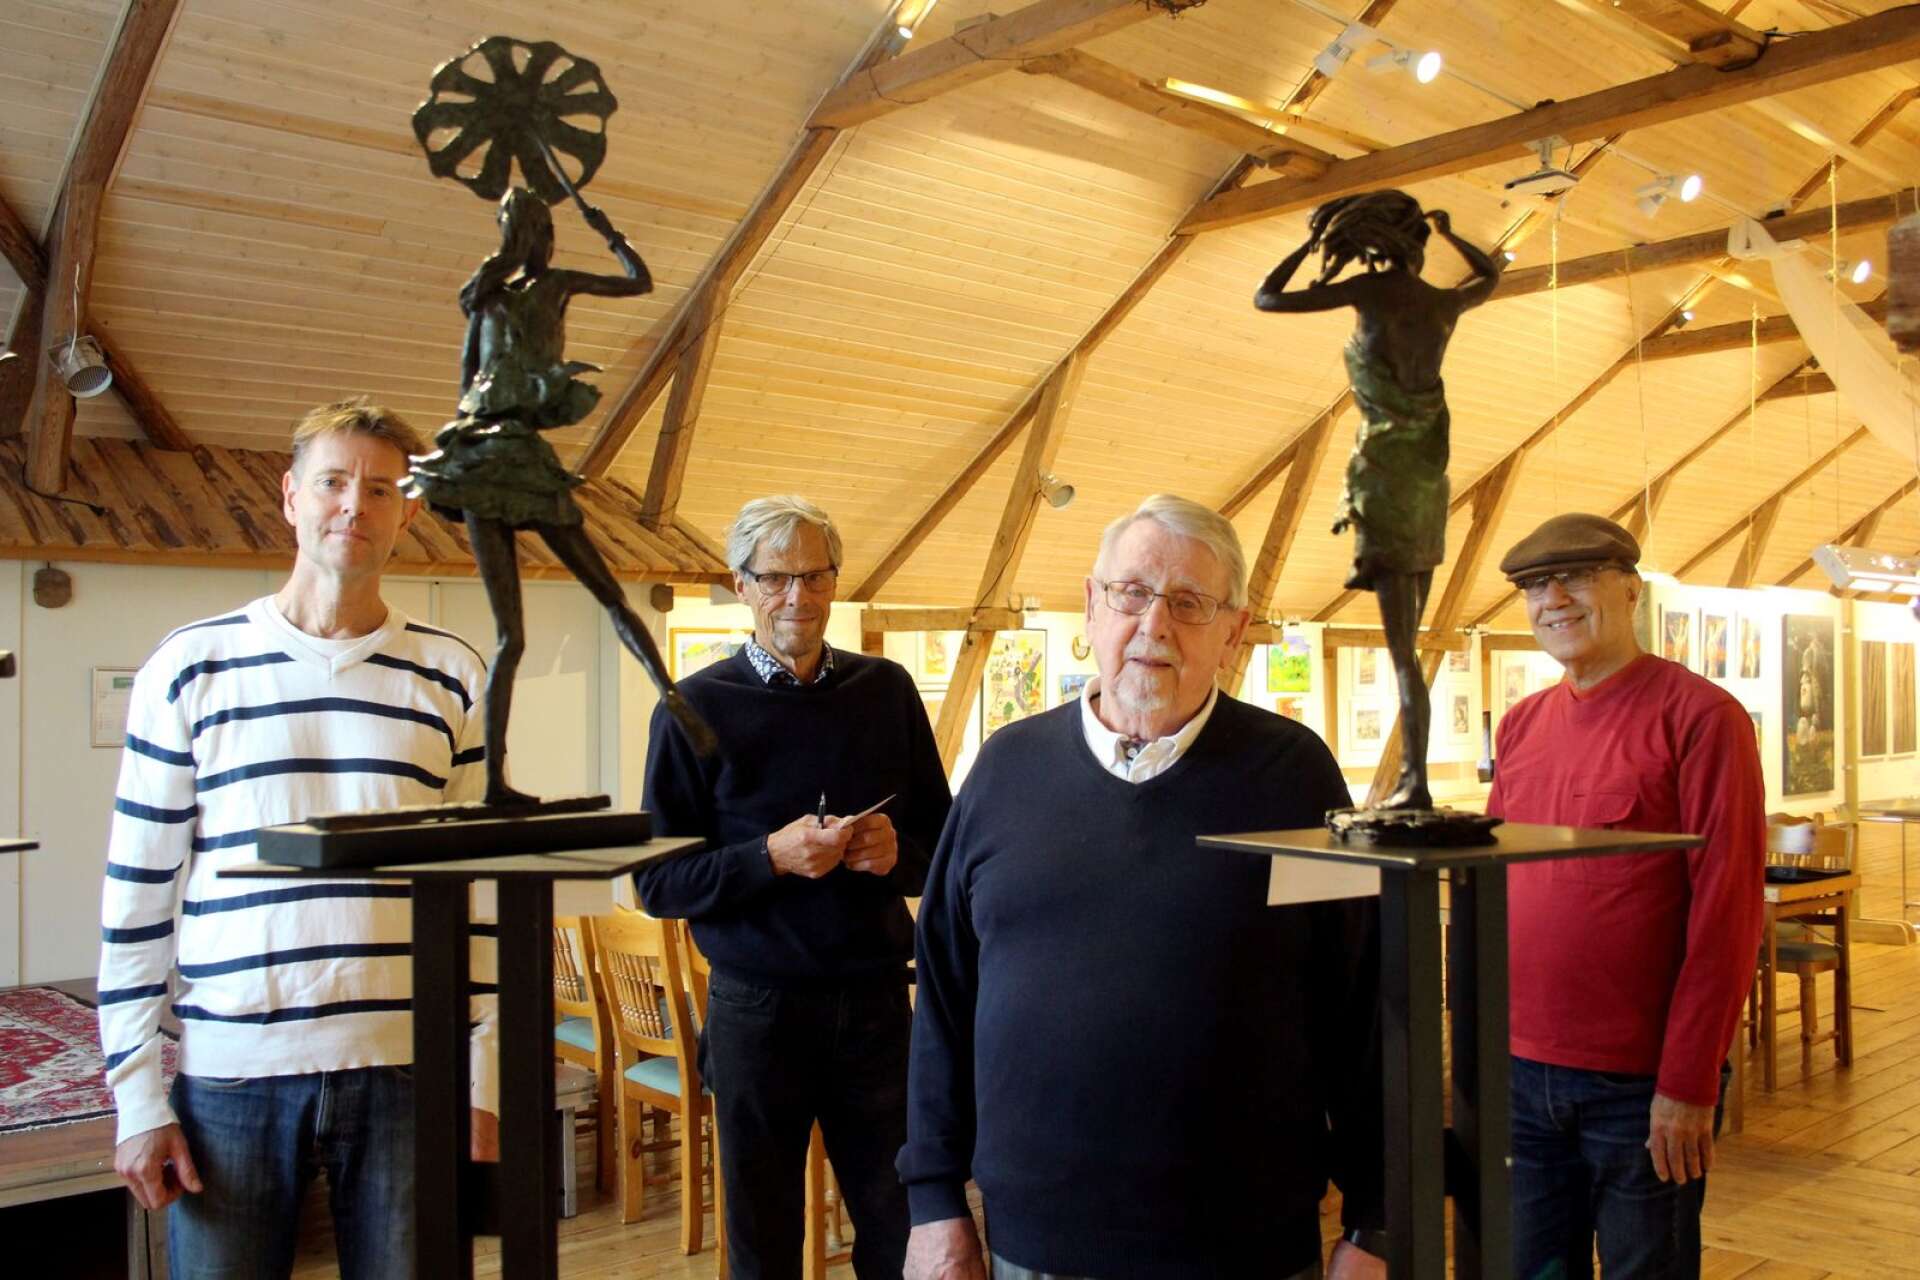 Karlstadskoloristerna Peter Jansson, Bo Wiktorsson och Per-Erik Hedell arrangerar Konstmässan på Almars gård tillsammans med konstvänner, däribland Ali Samini. Här står de vid skulpturer av Laura Gunnarsson.